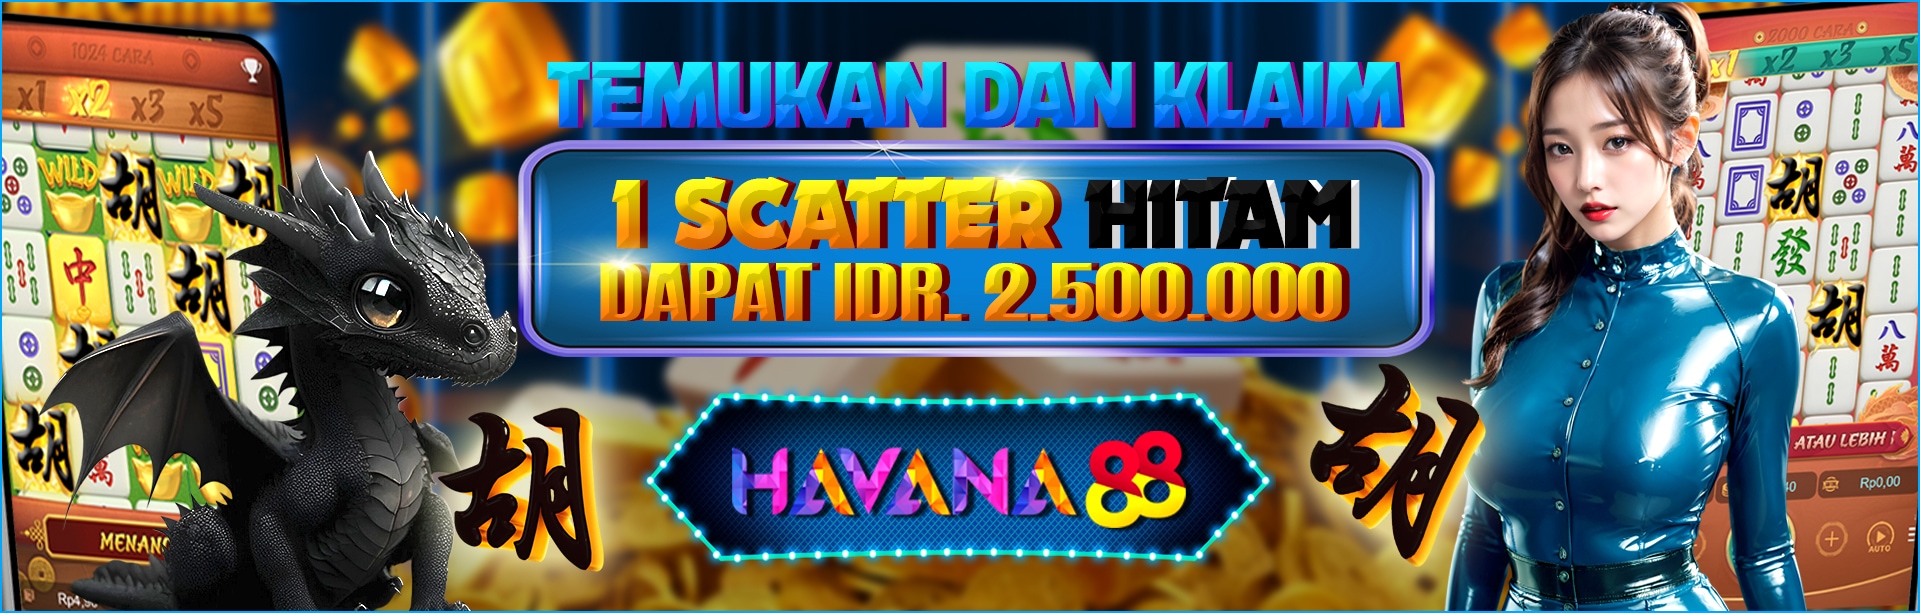 SCATTER HITAM HAVANA88